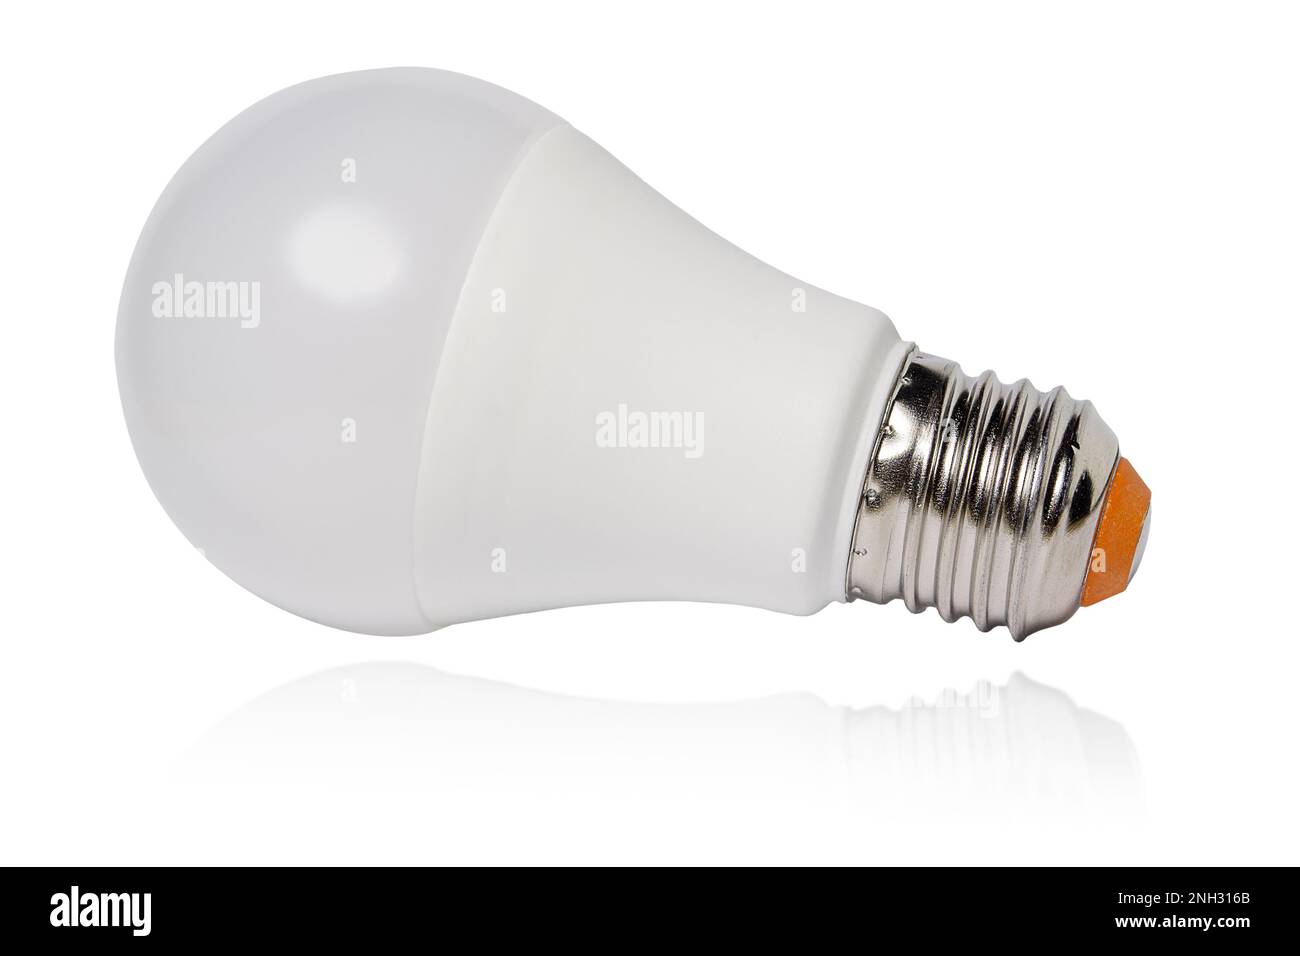 Lampe LED moderne, isolée sur fond blanc avec réflexion Banque D'Images